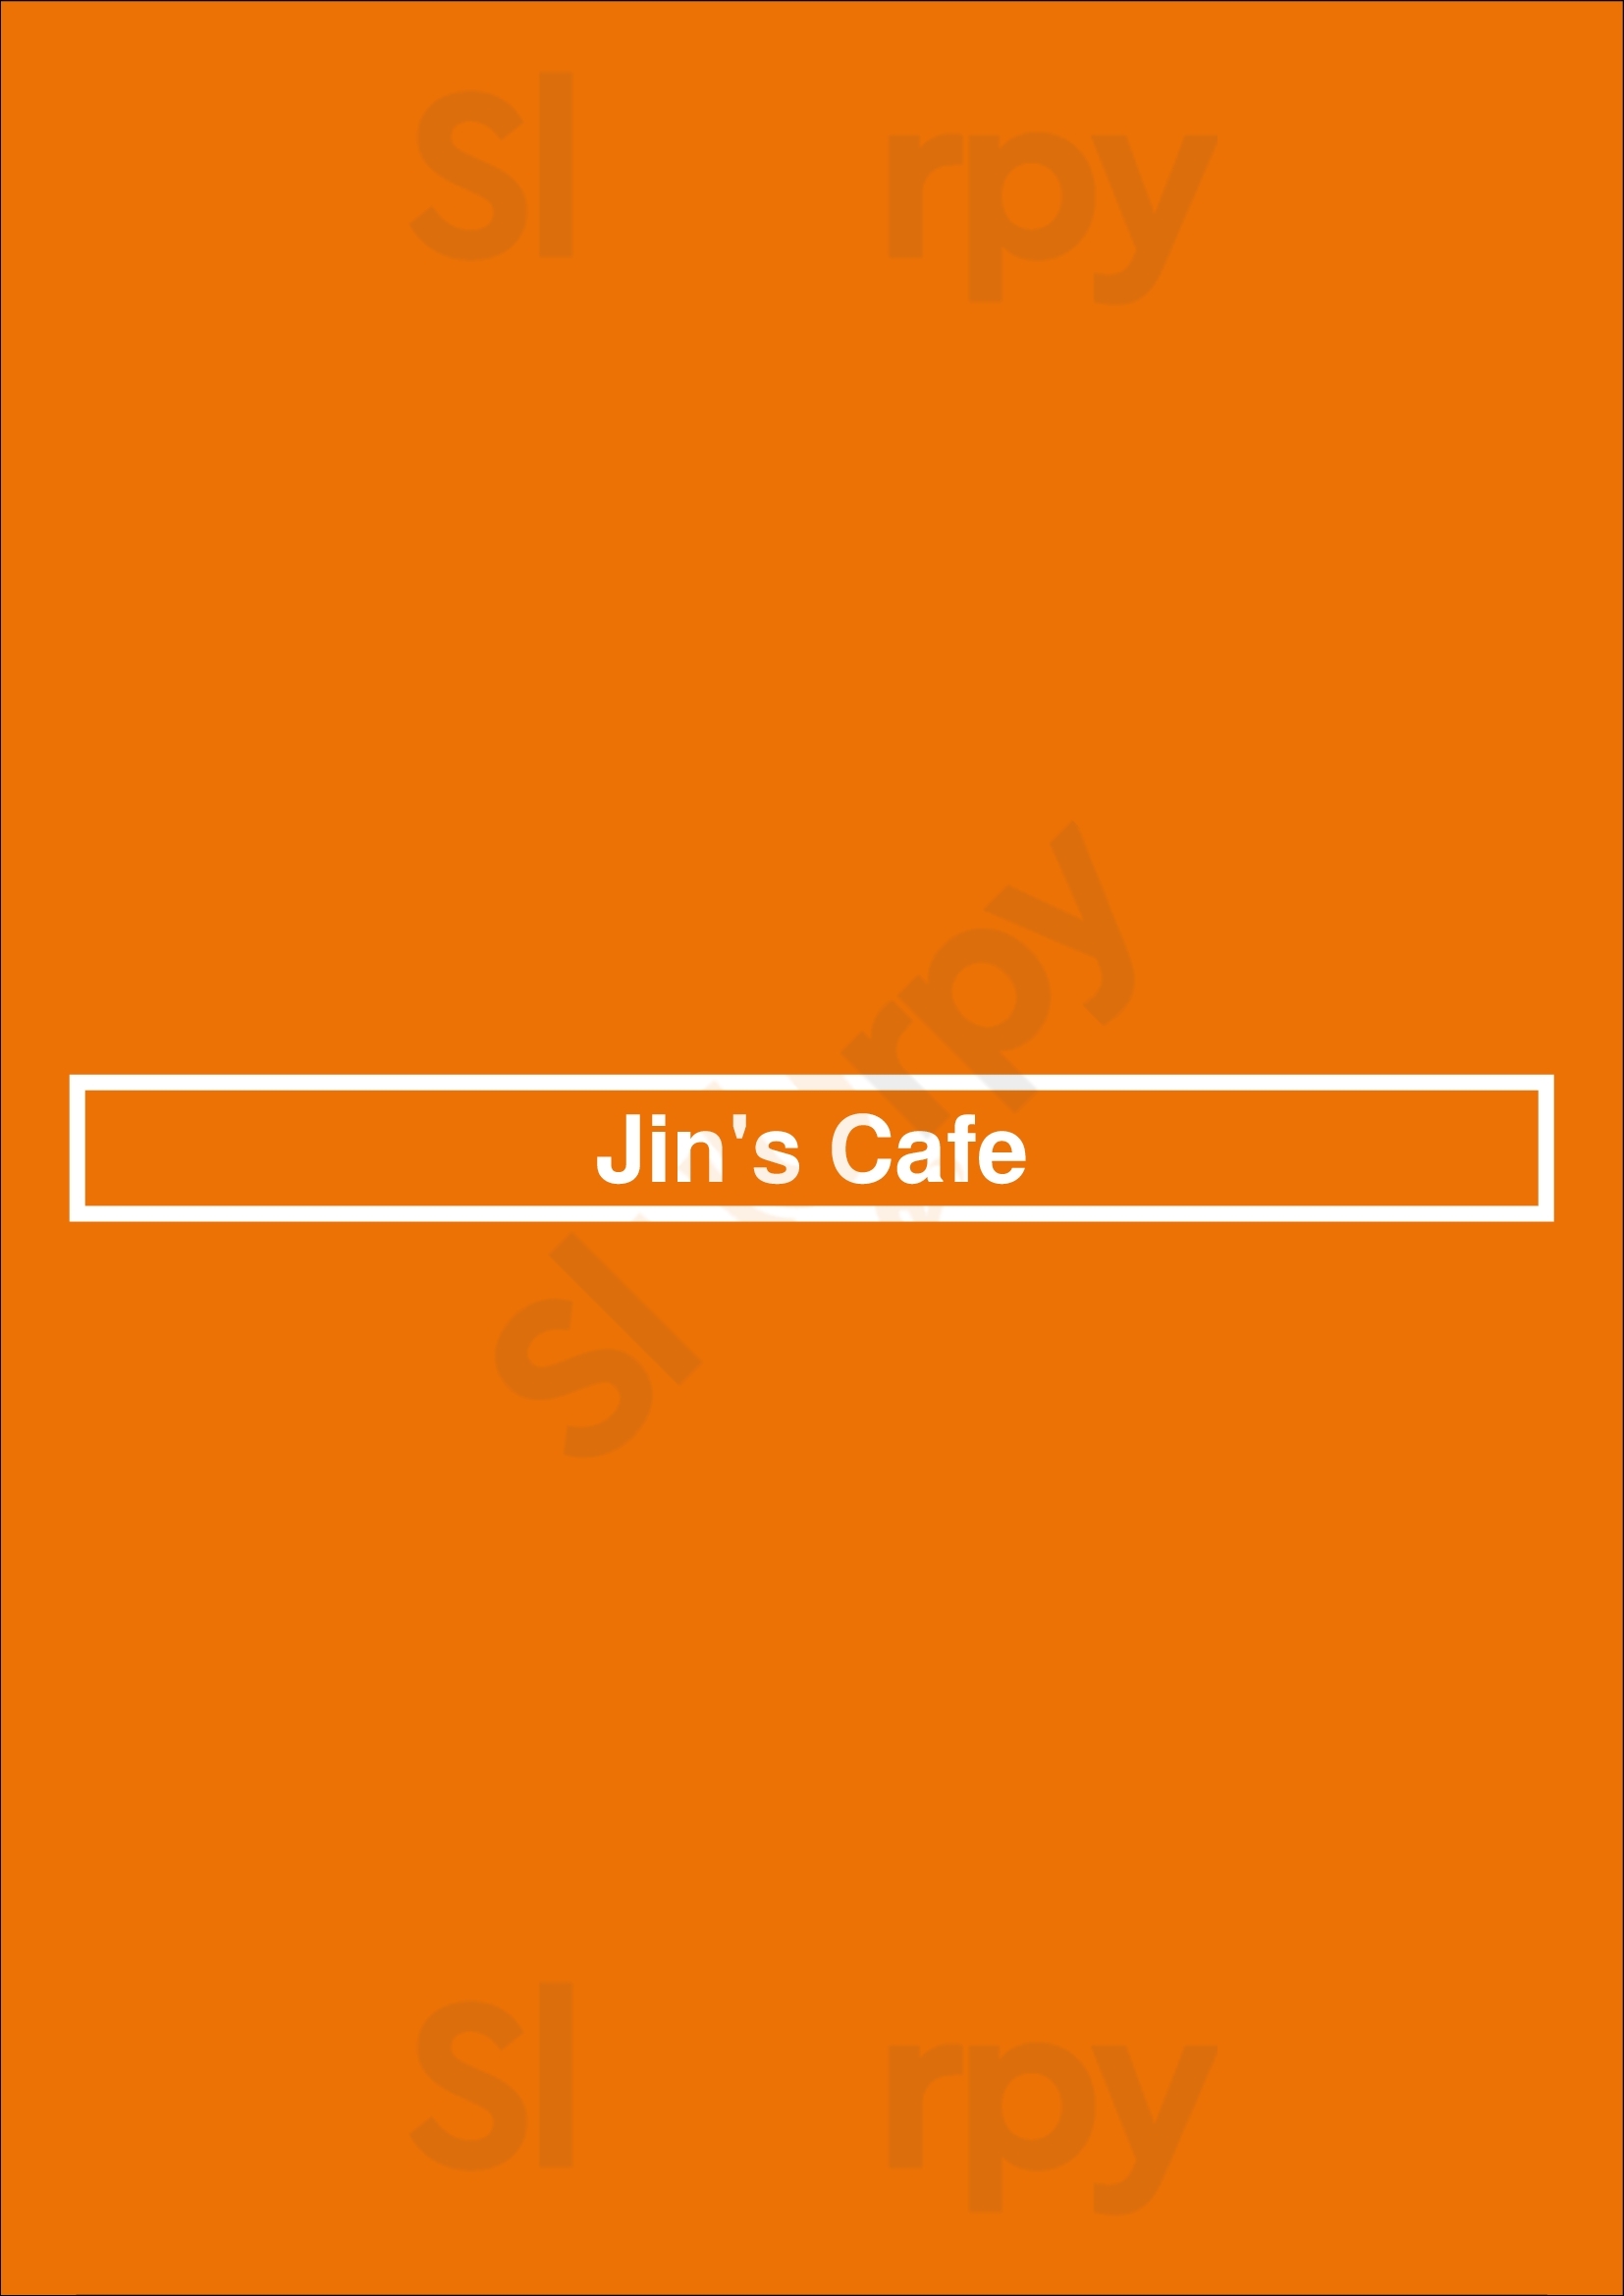 Jin's Cafe Houston Menu - 1